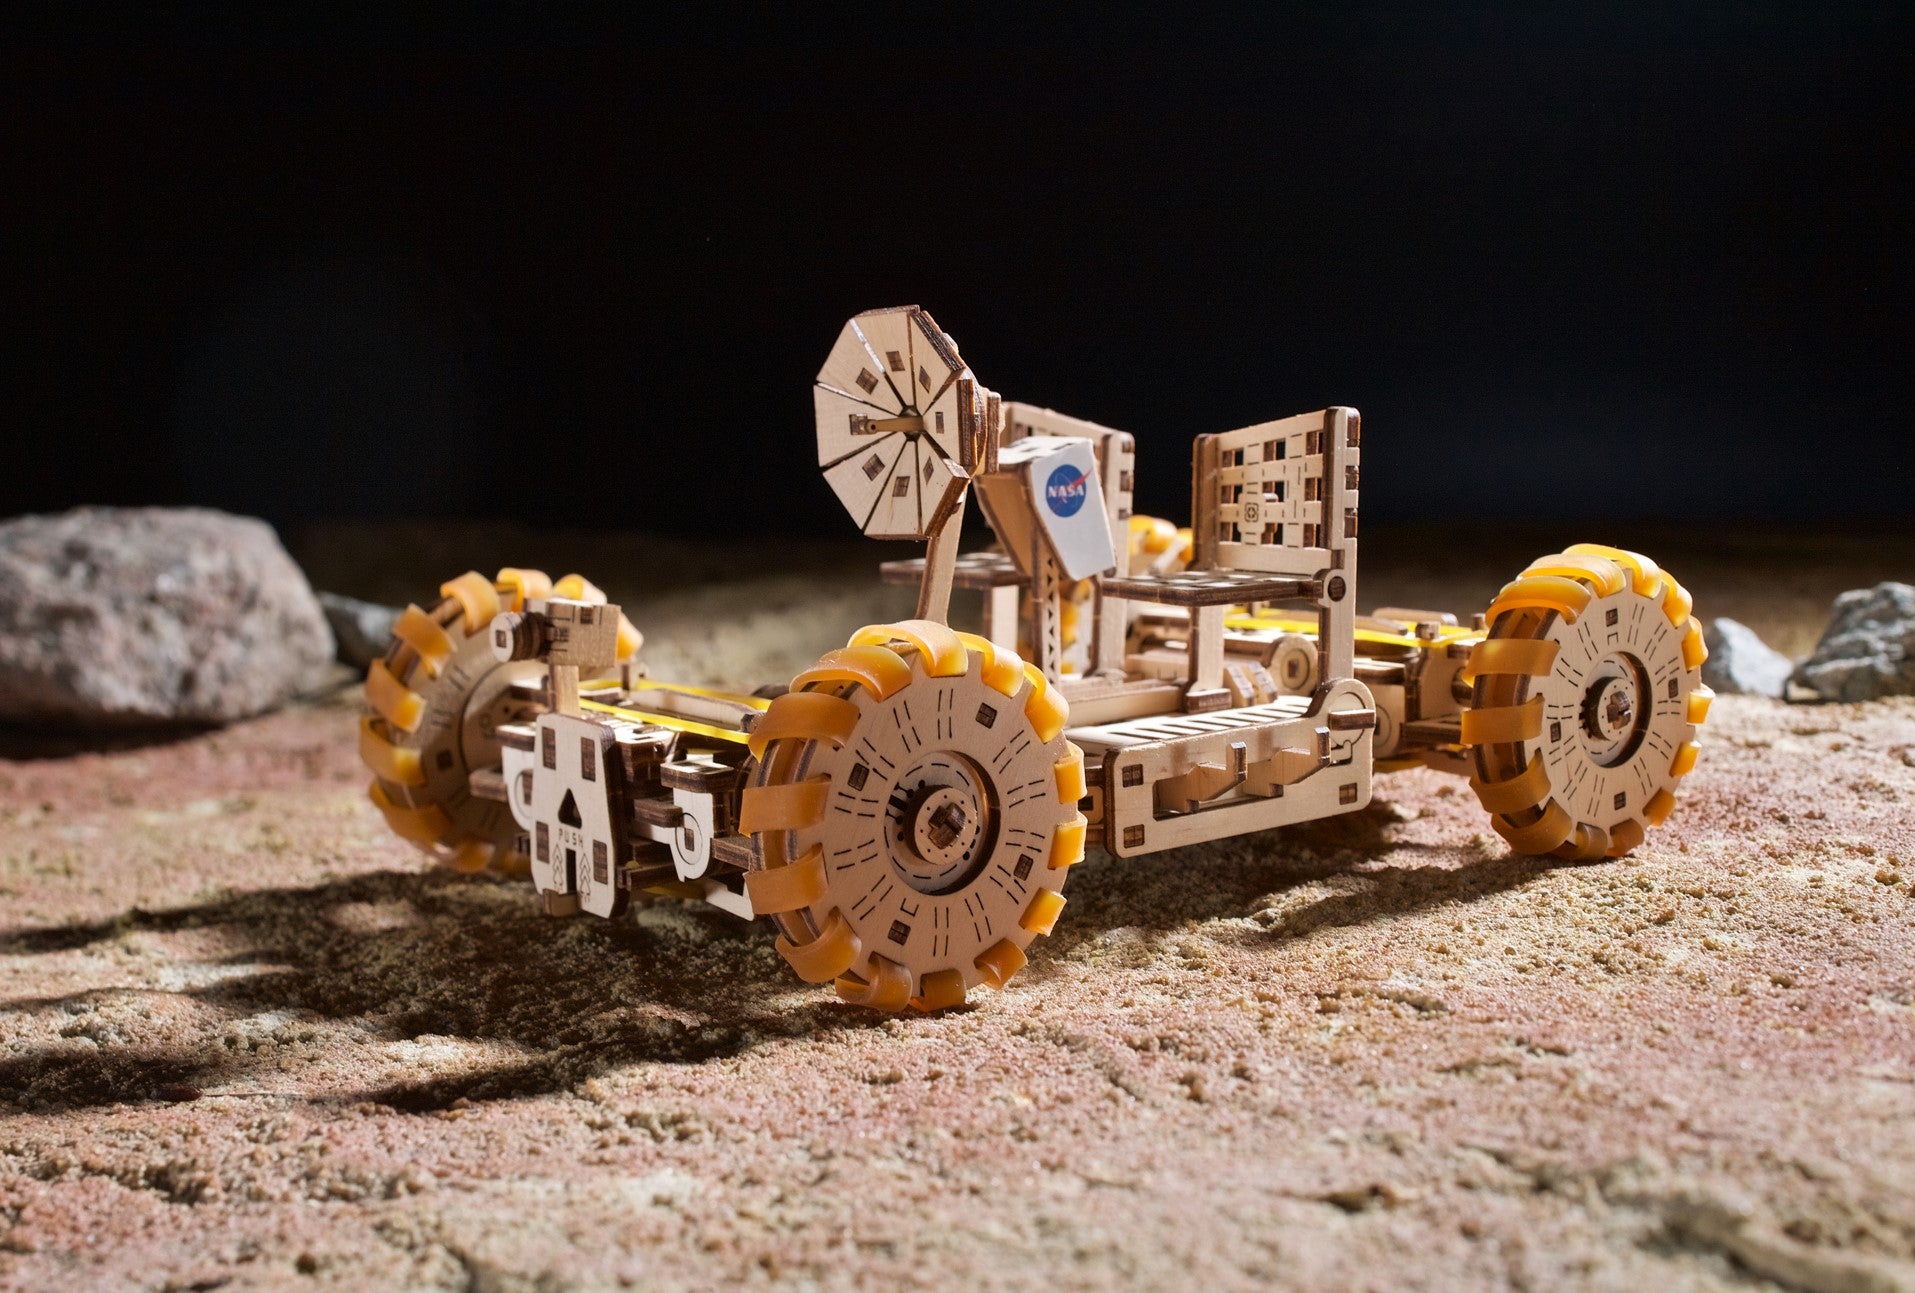 NASA - Mondfahrzeug - Lunar Rover